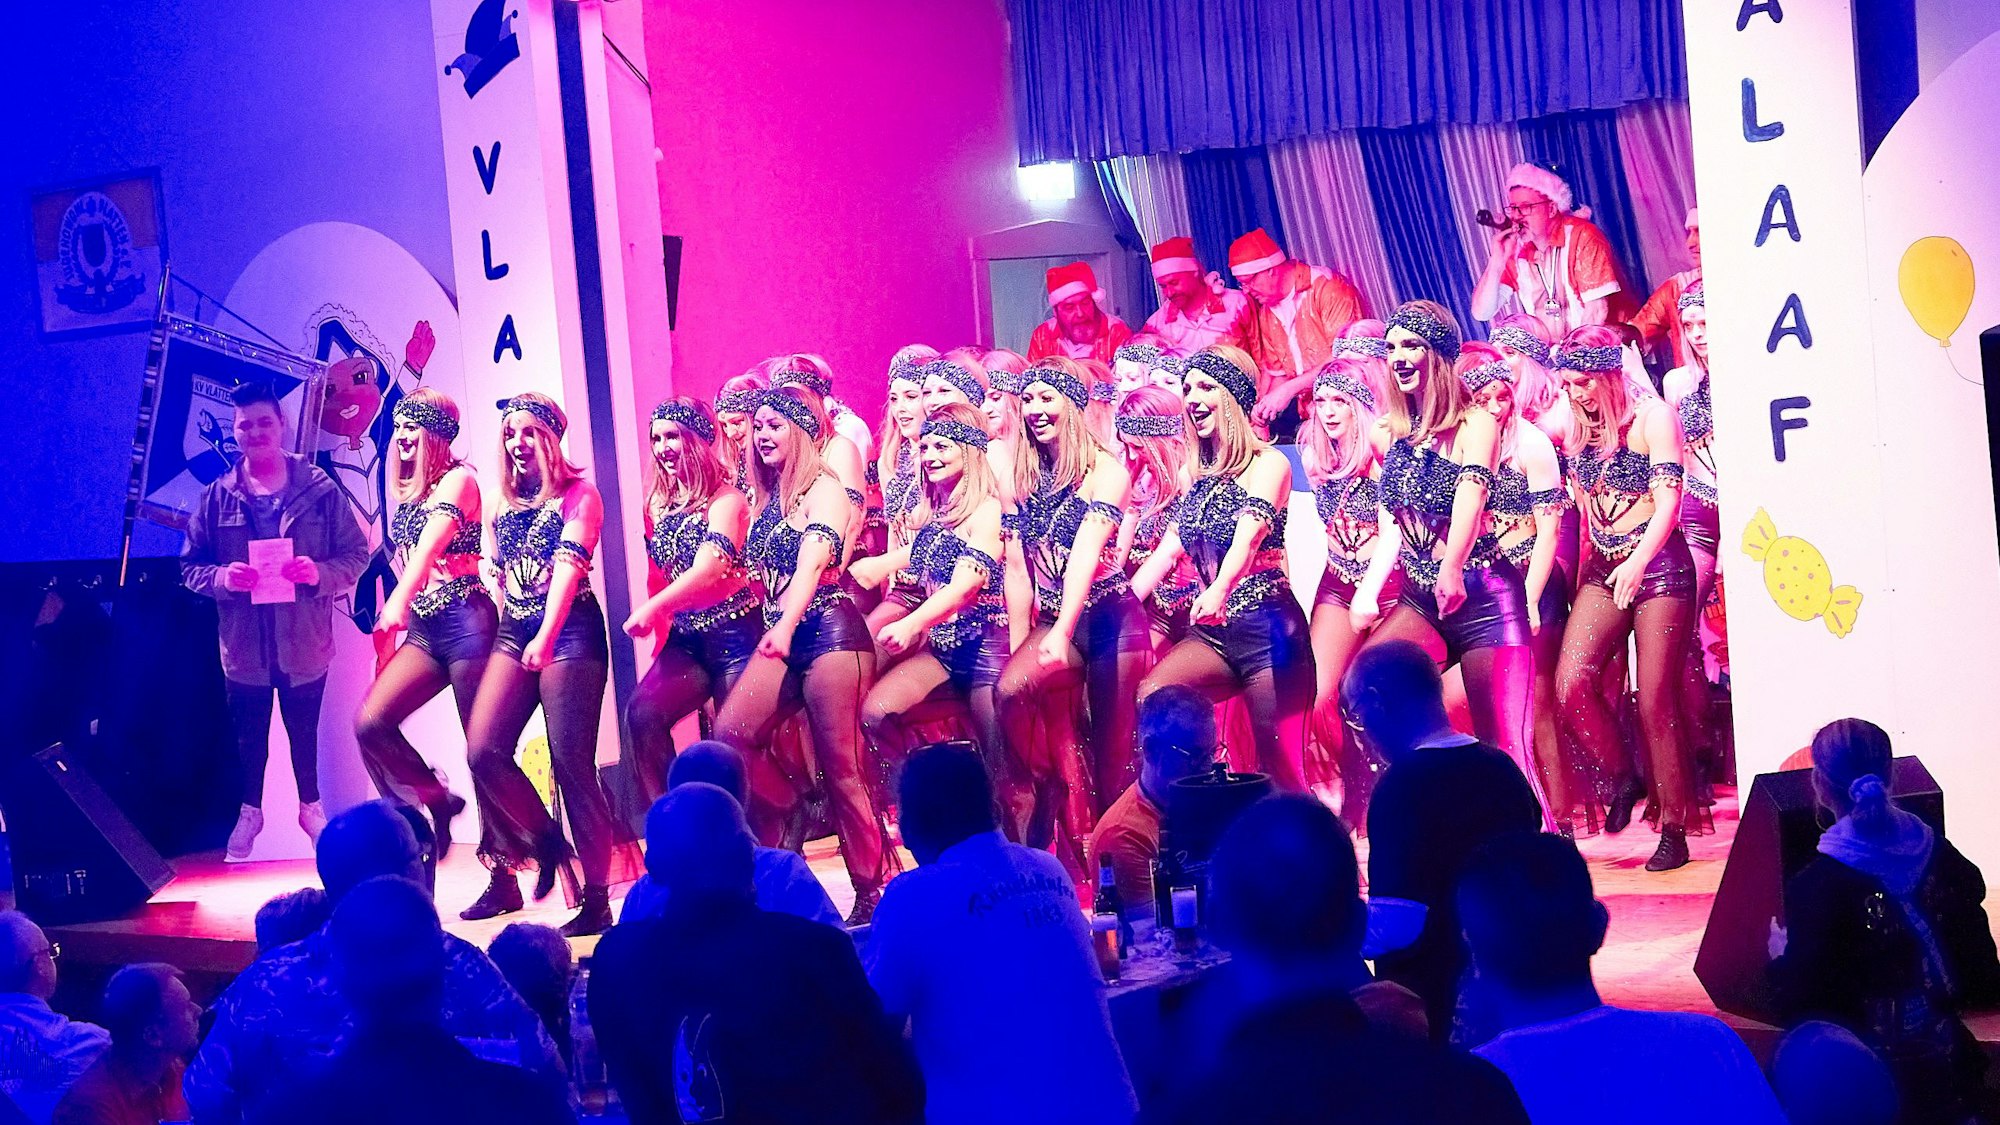 Eine Gruppe junger Frauen tanzt in Kostümen auf einer Karnevalsbühne.